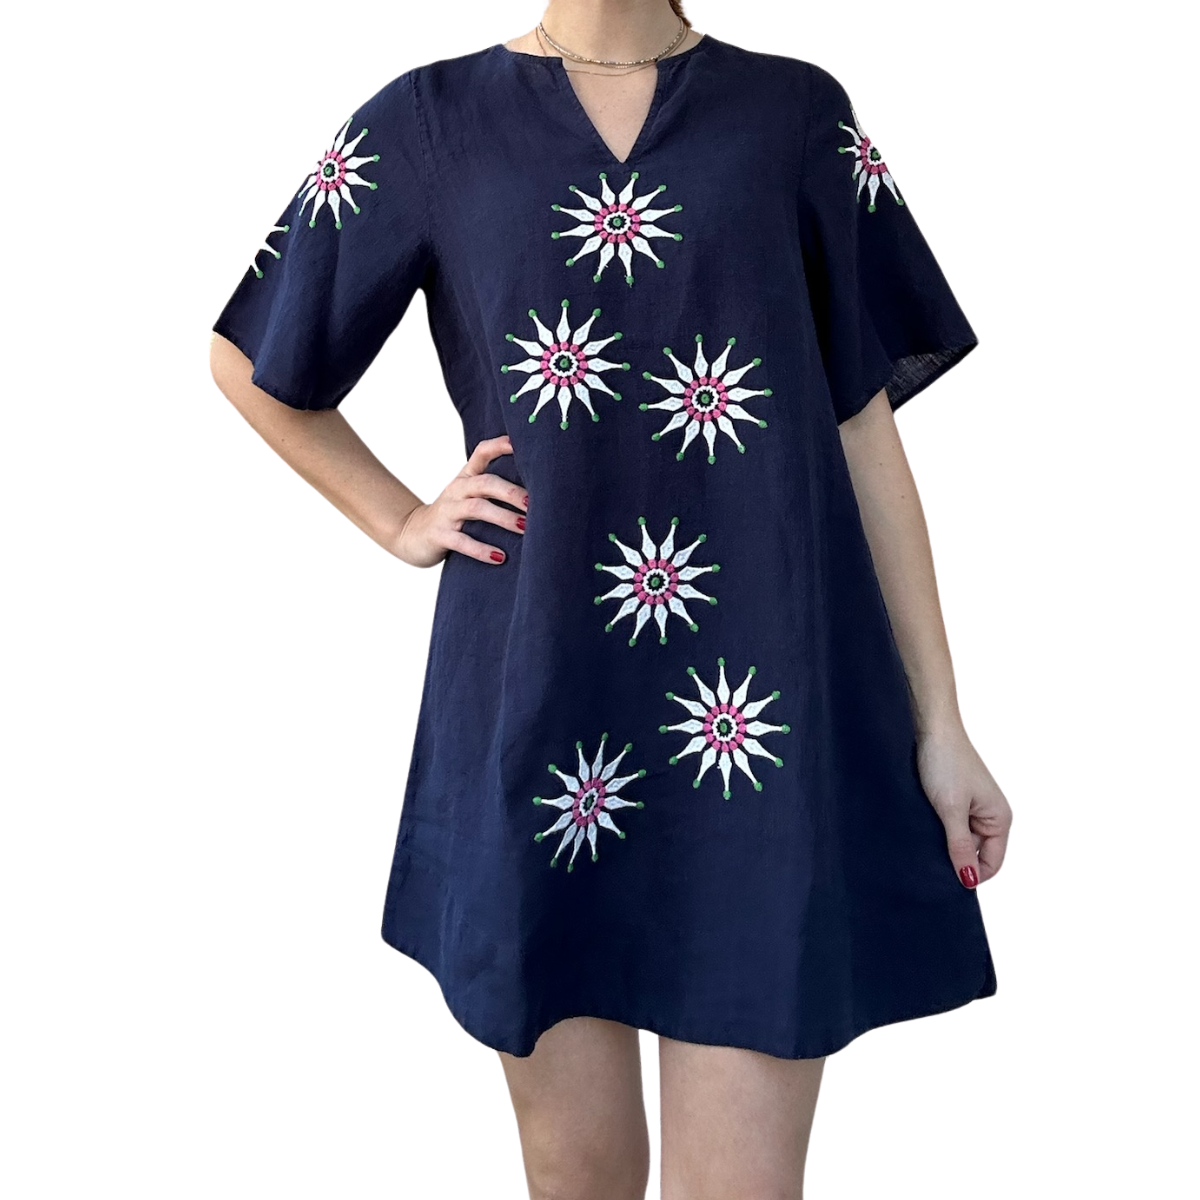 Gemma Star Flower Dress - Navy